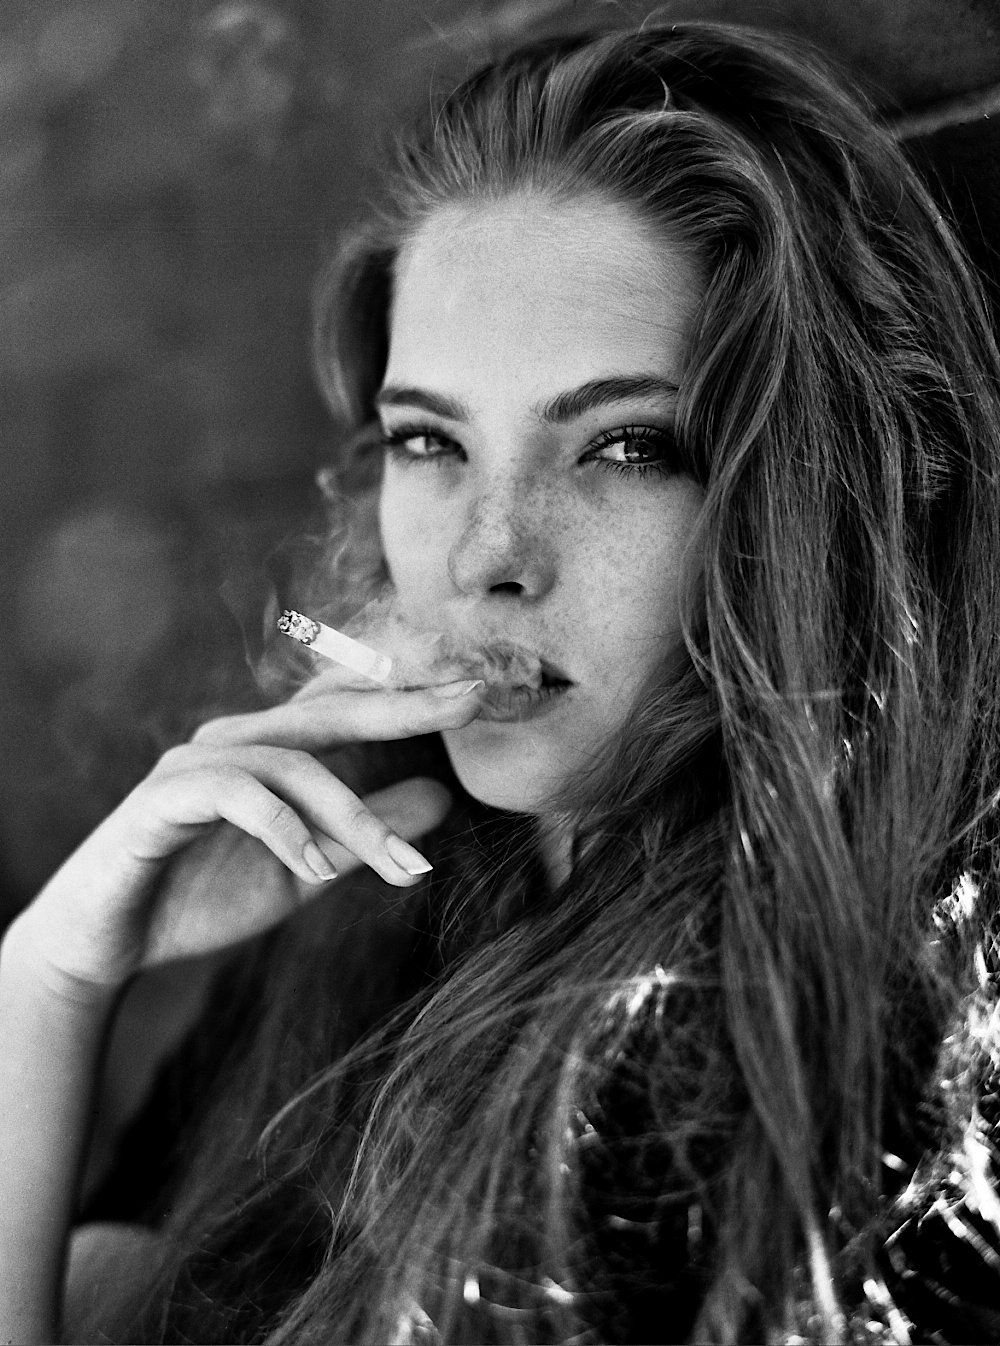 Beautiful women smoking